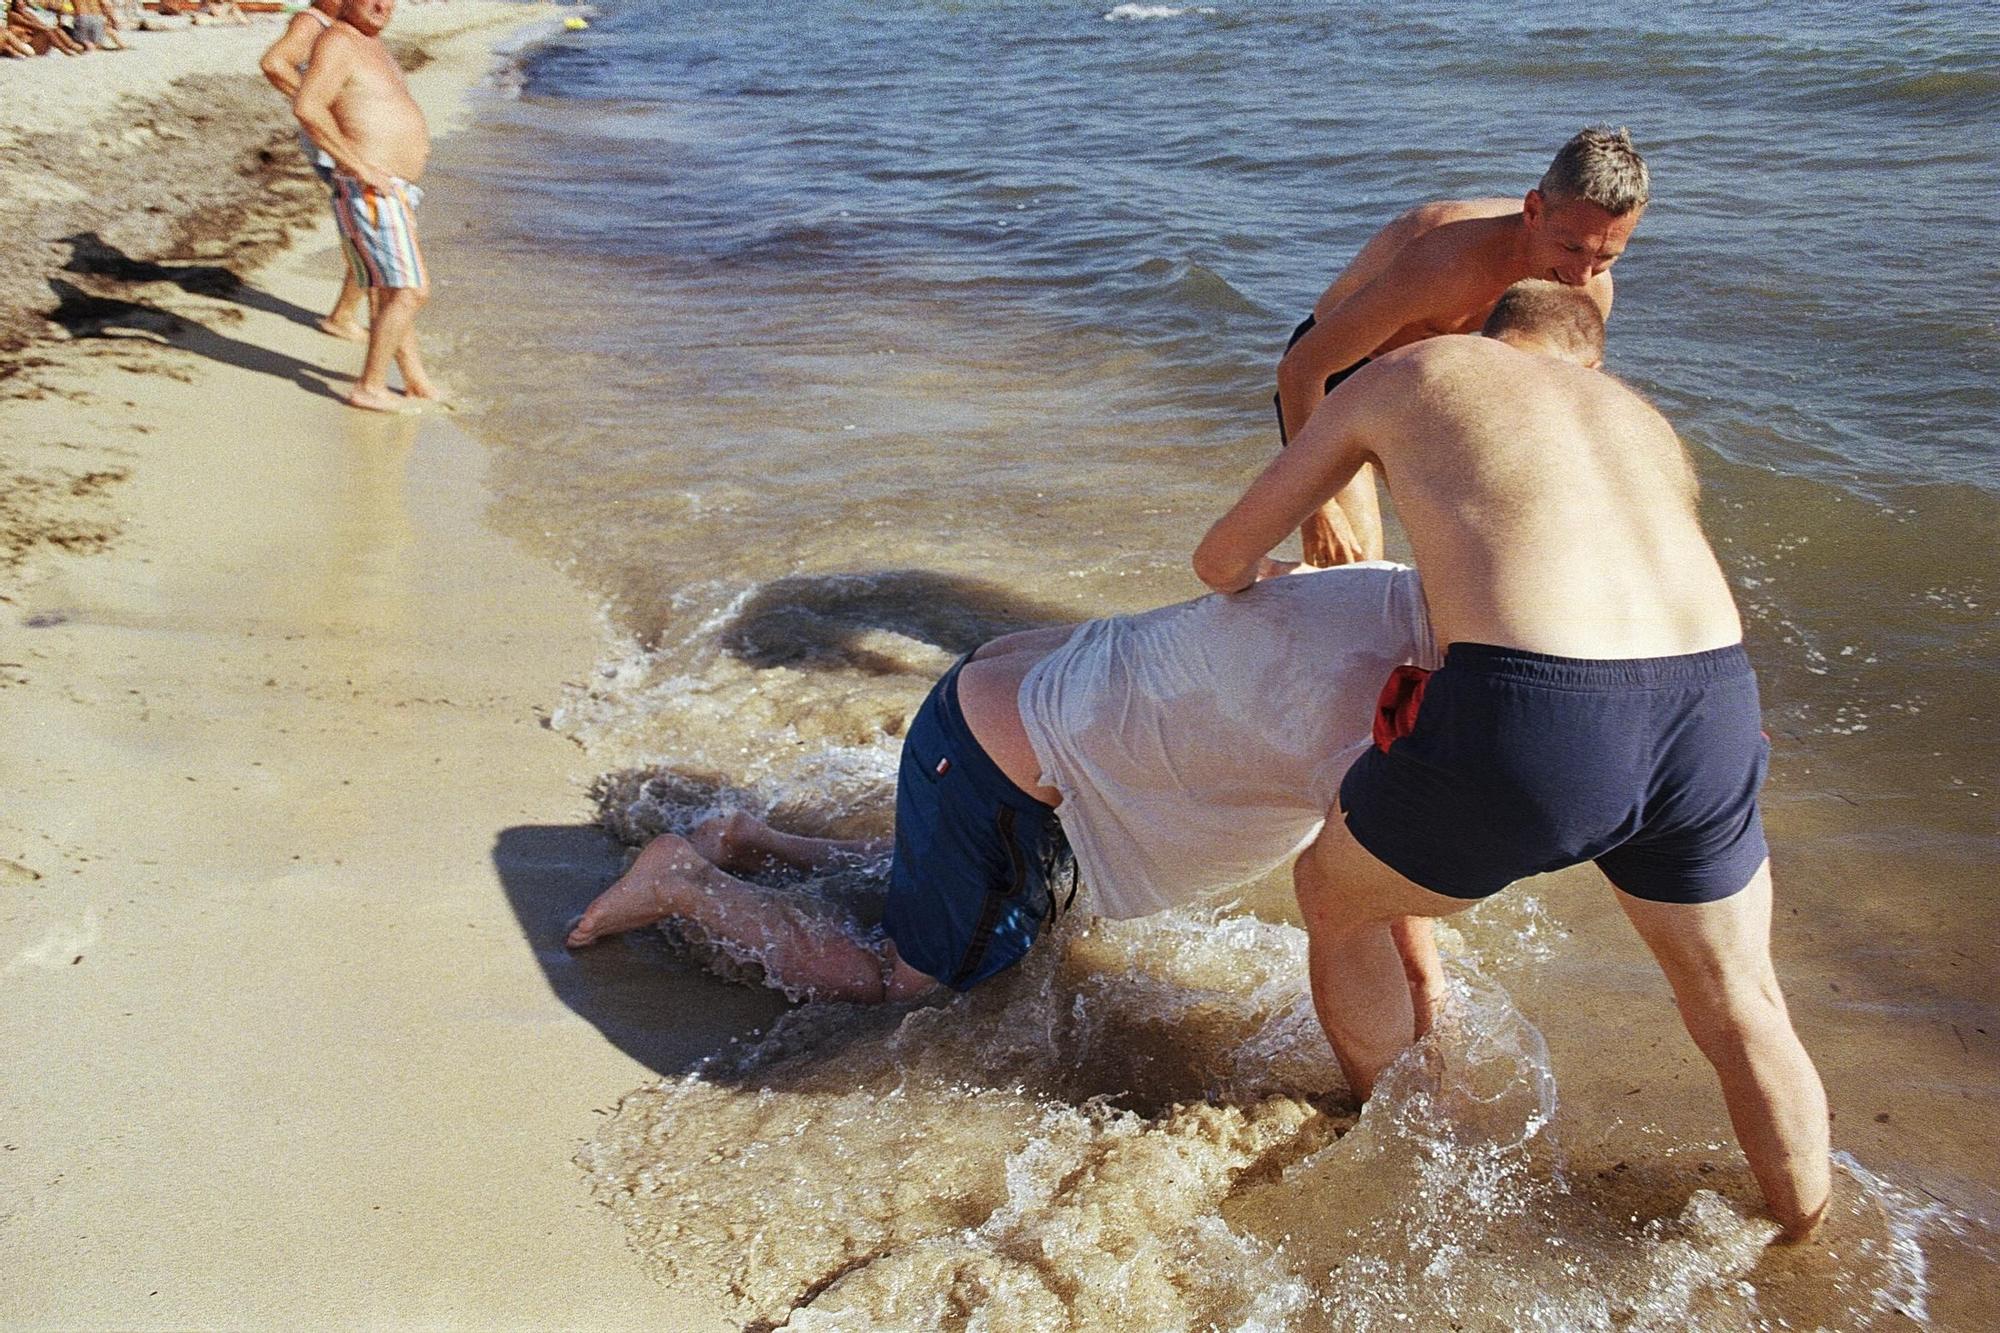 "Weine nicht, wenn der Pegel fällt": Bilder eines deutschen Straßenfotografen von der Playa de Palma auf Mallorca